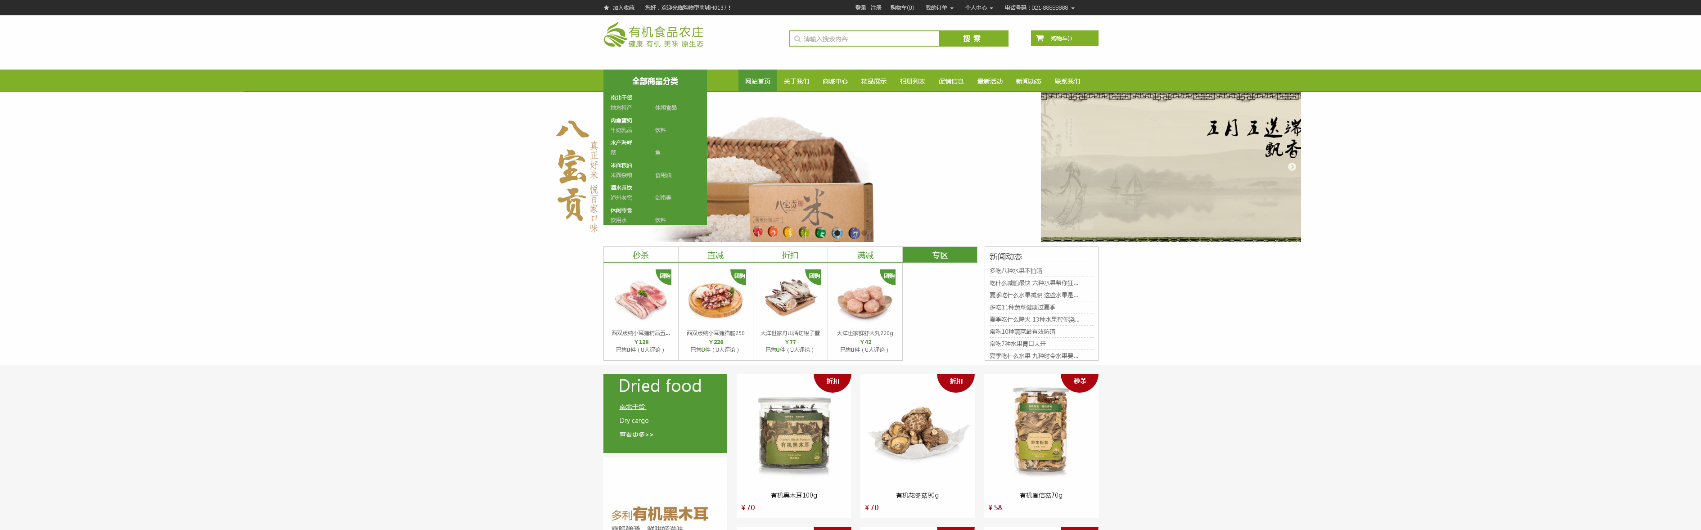 食品,饮料,茶叶html5网站模版